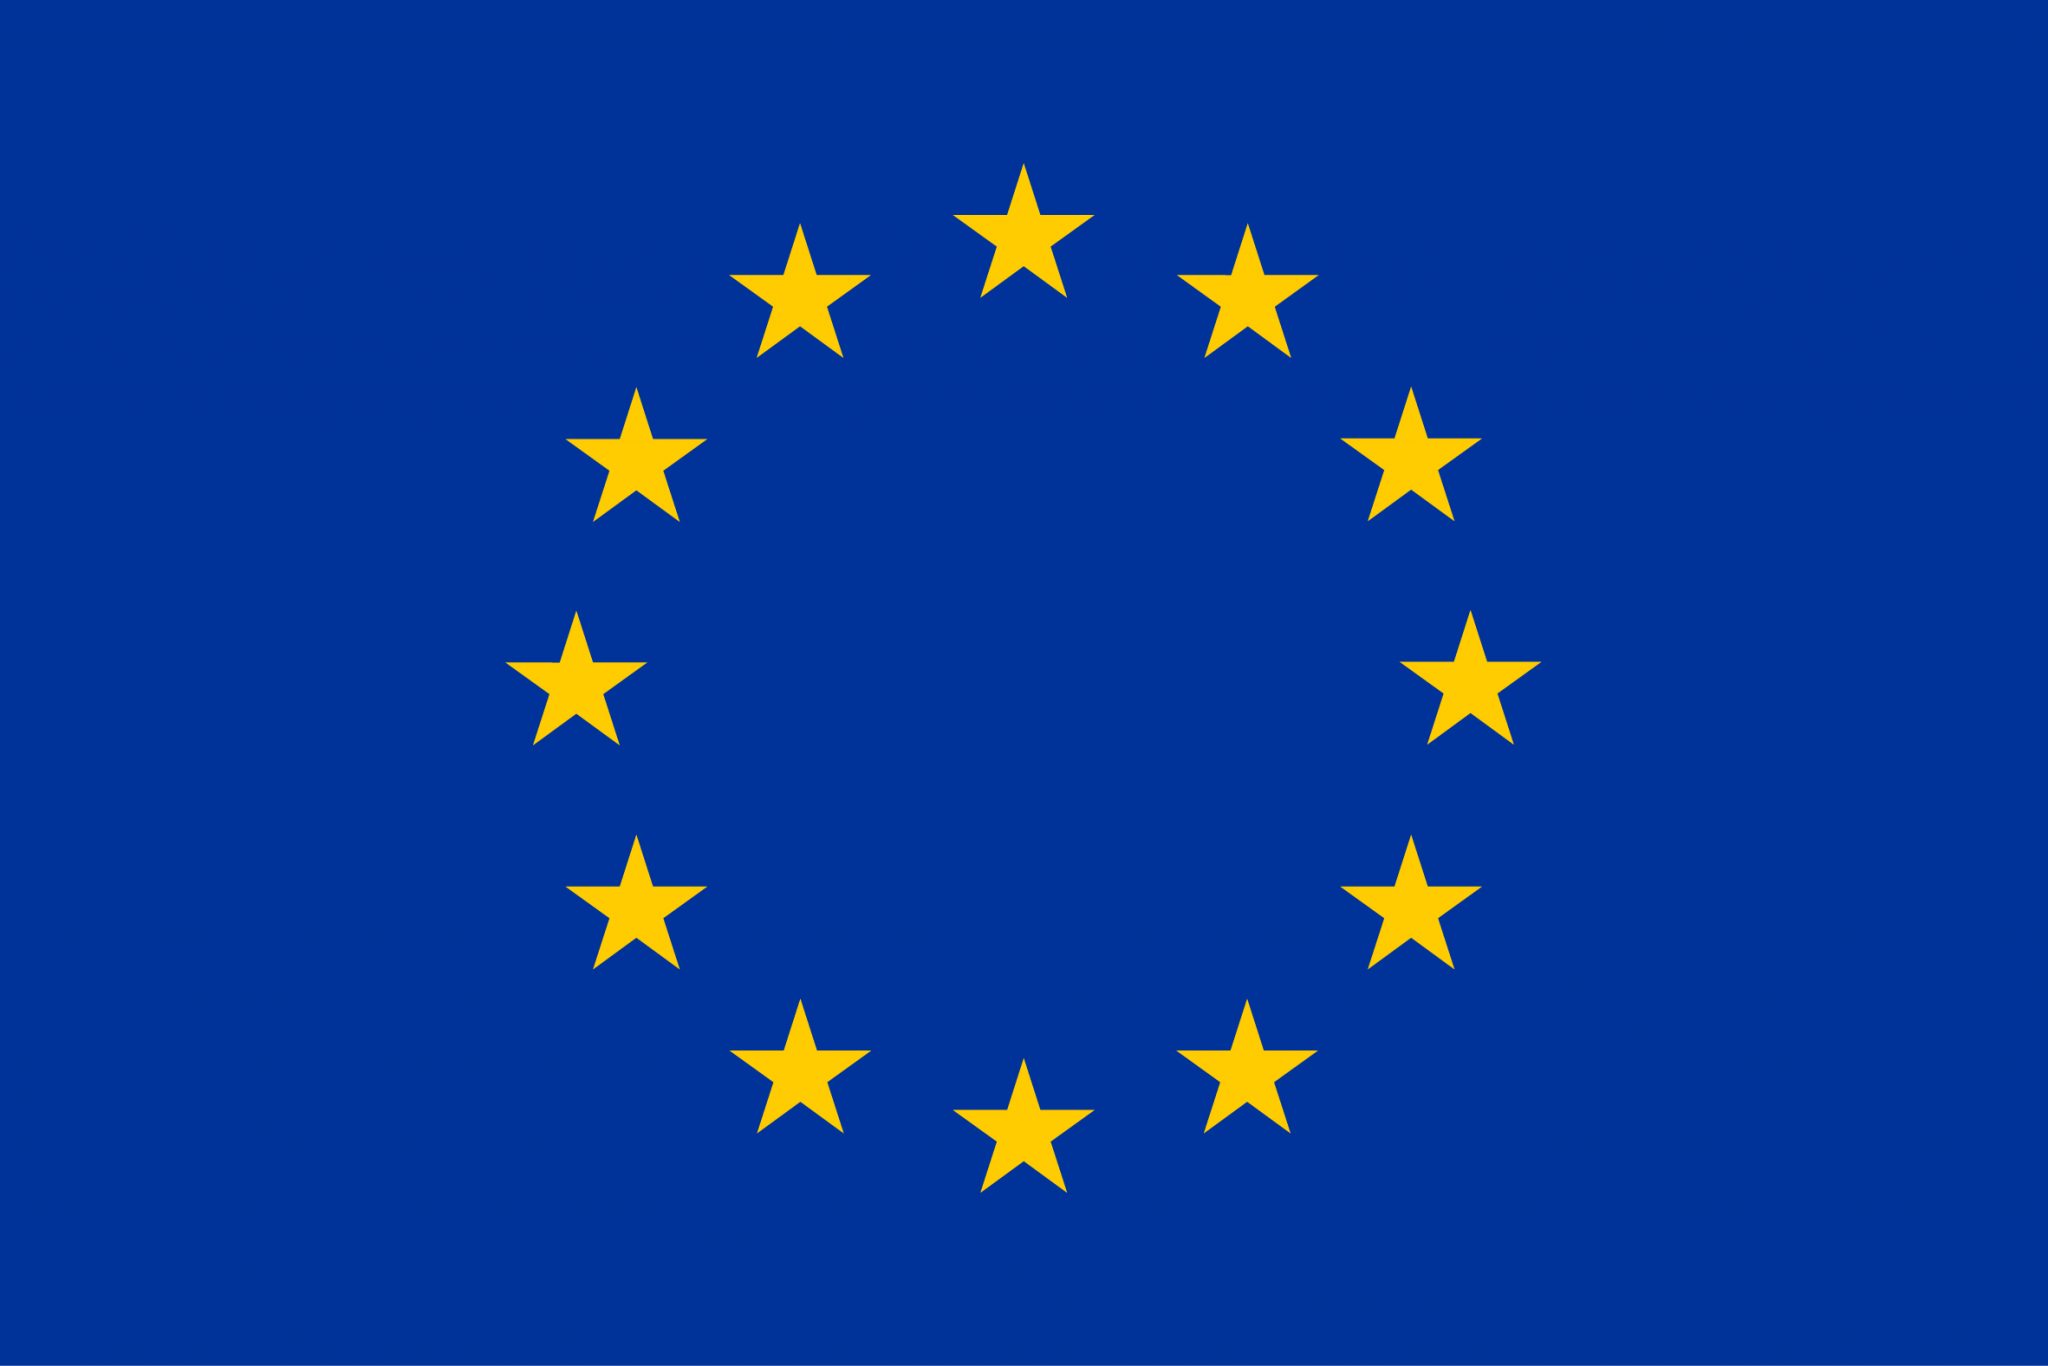 logo unione europea